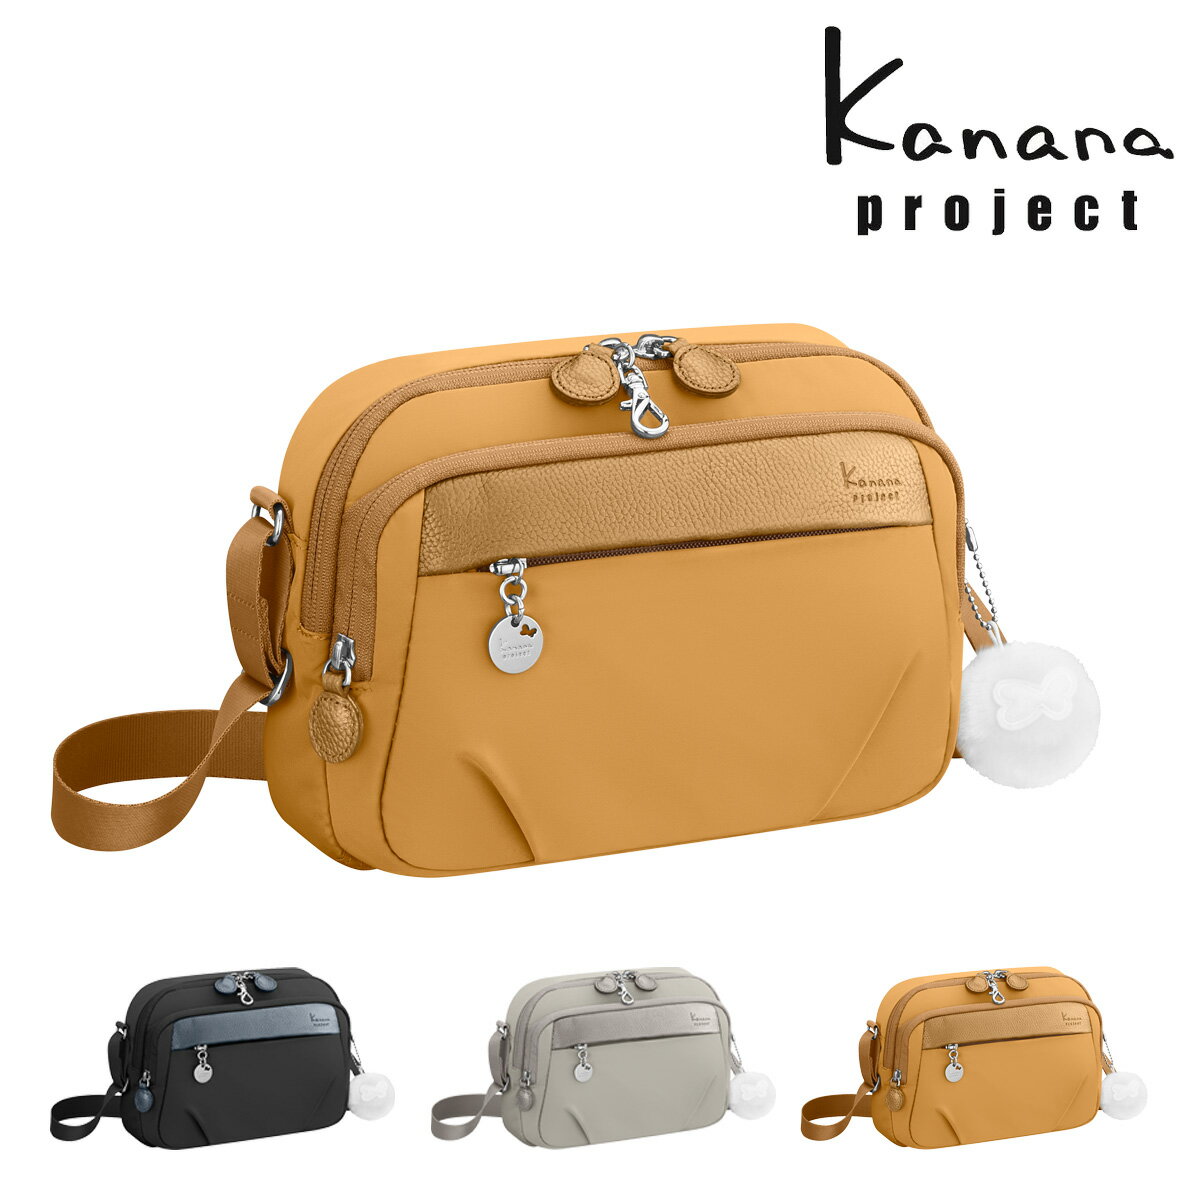 カナナプロジェクト ショルダーバッグ 軽量 レディース 67641 PJ1-4th Kanana project